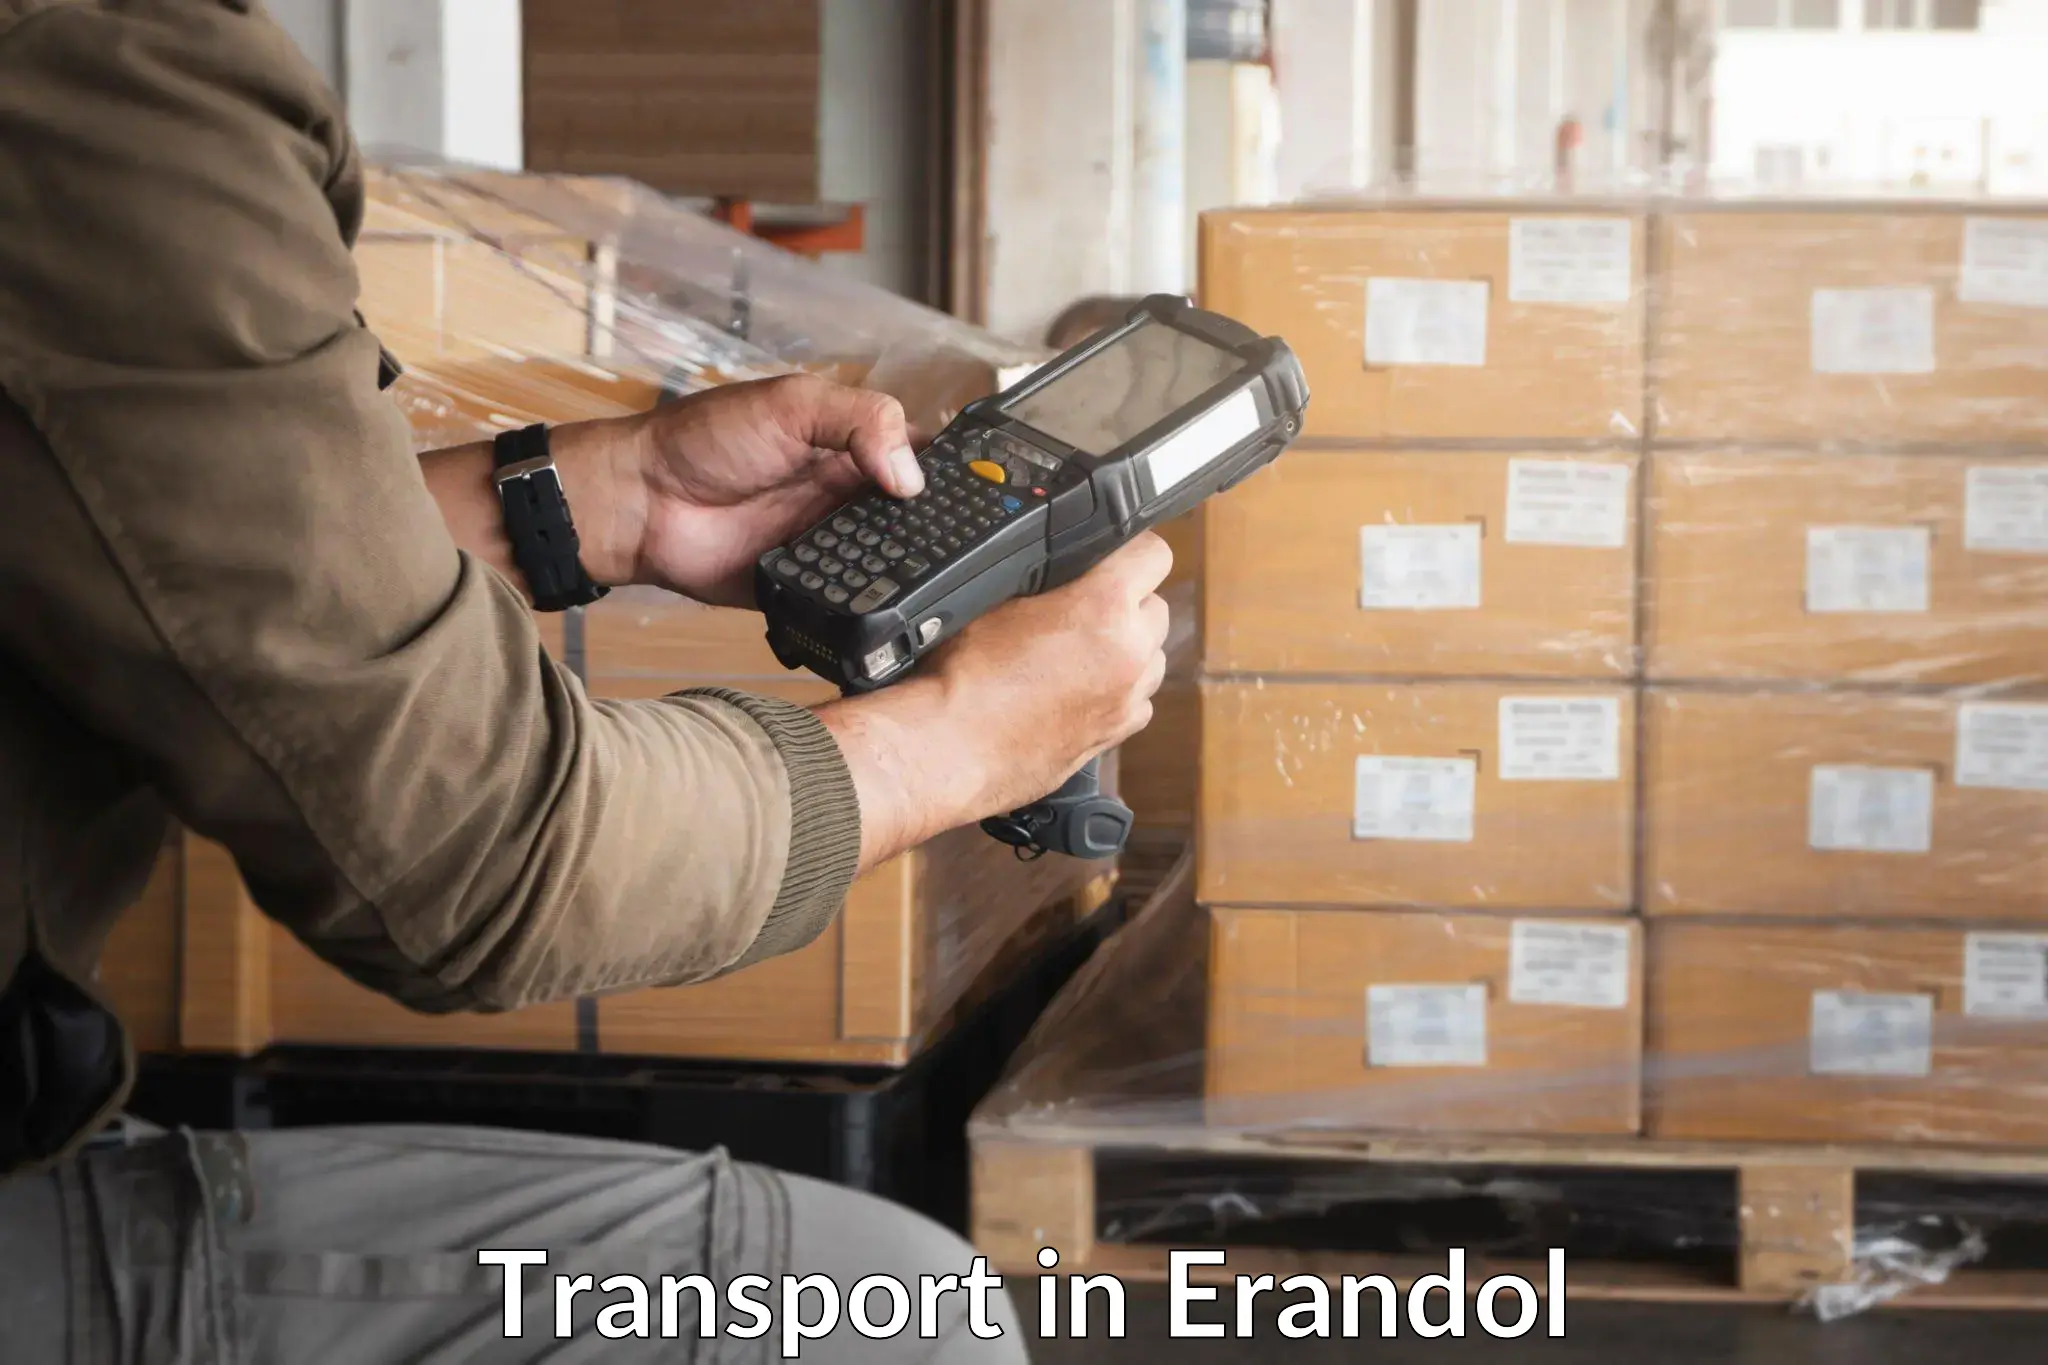 Furniture transport service in Erandol